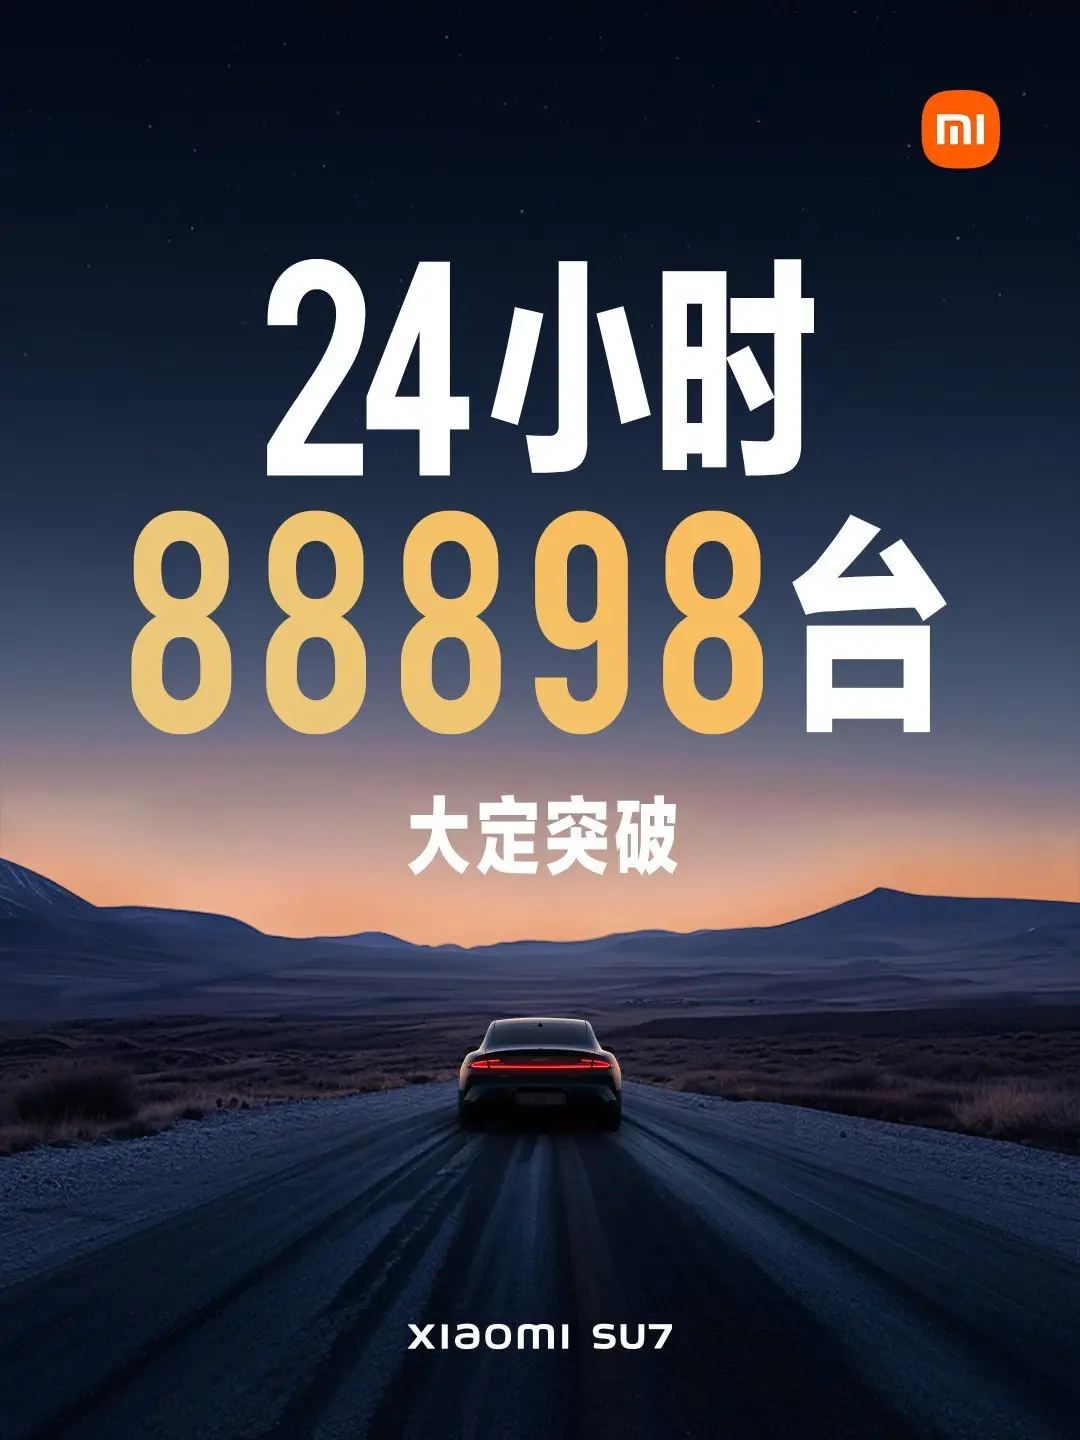 11 millió forint csak a Xiaomi SU7 és már 90.000 rendelés jött rá